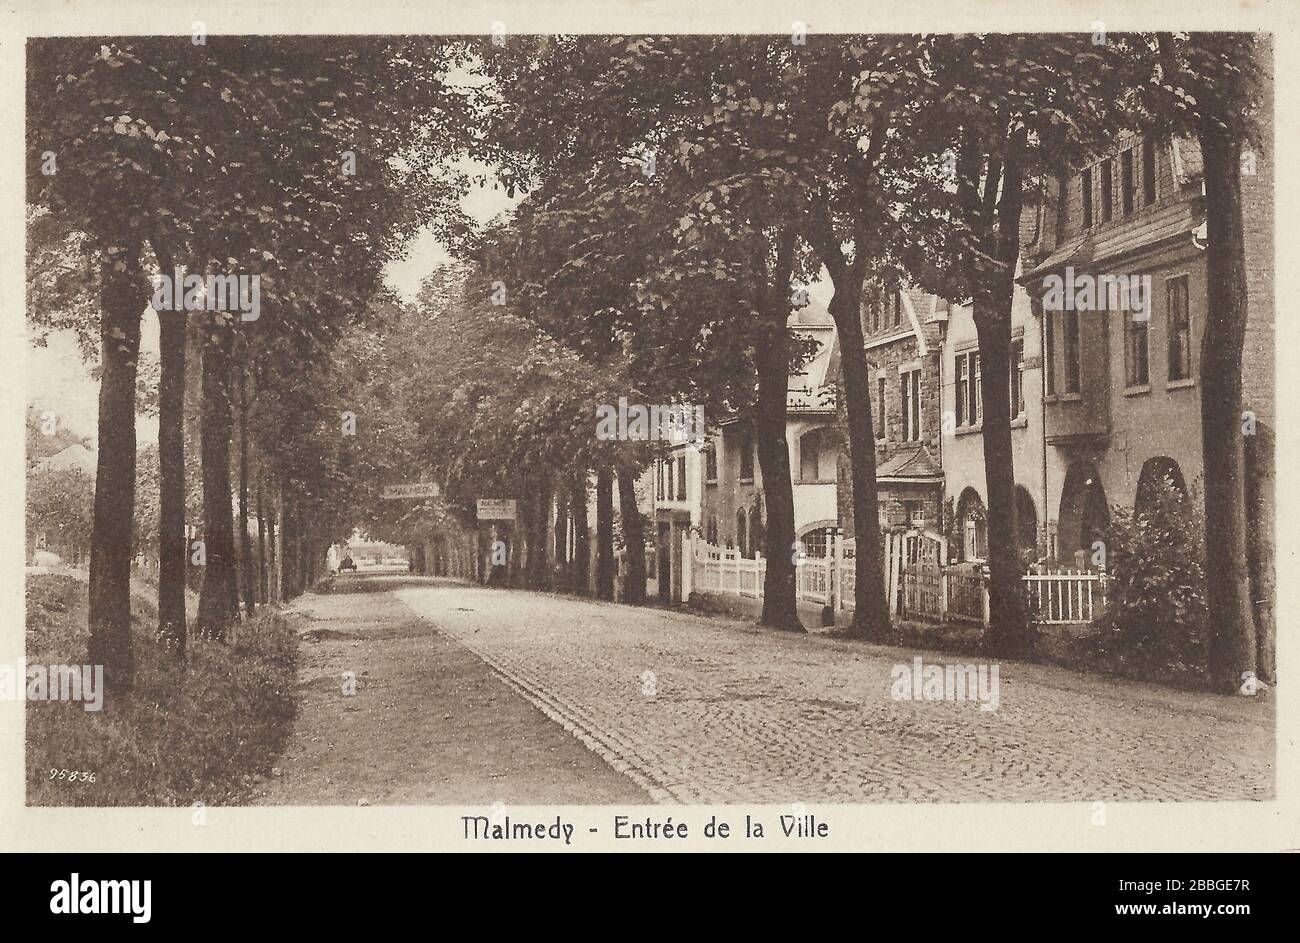 Tarjeta postal entre la ville de Malmedy, de alrededor de 1935, mostrando un carril de árboles con casonas Foto de stock